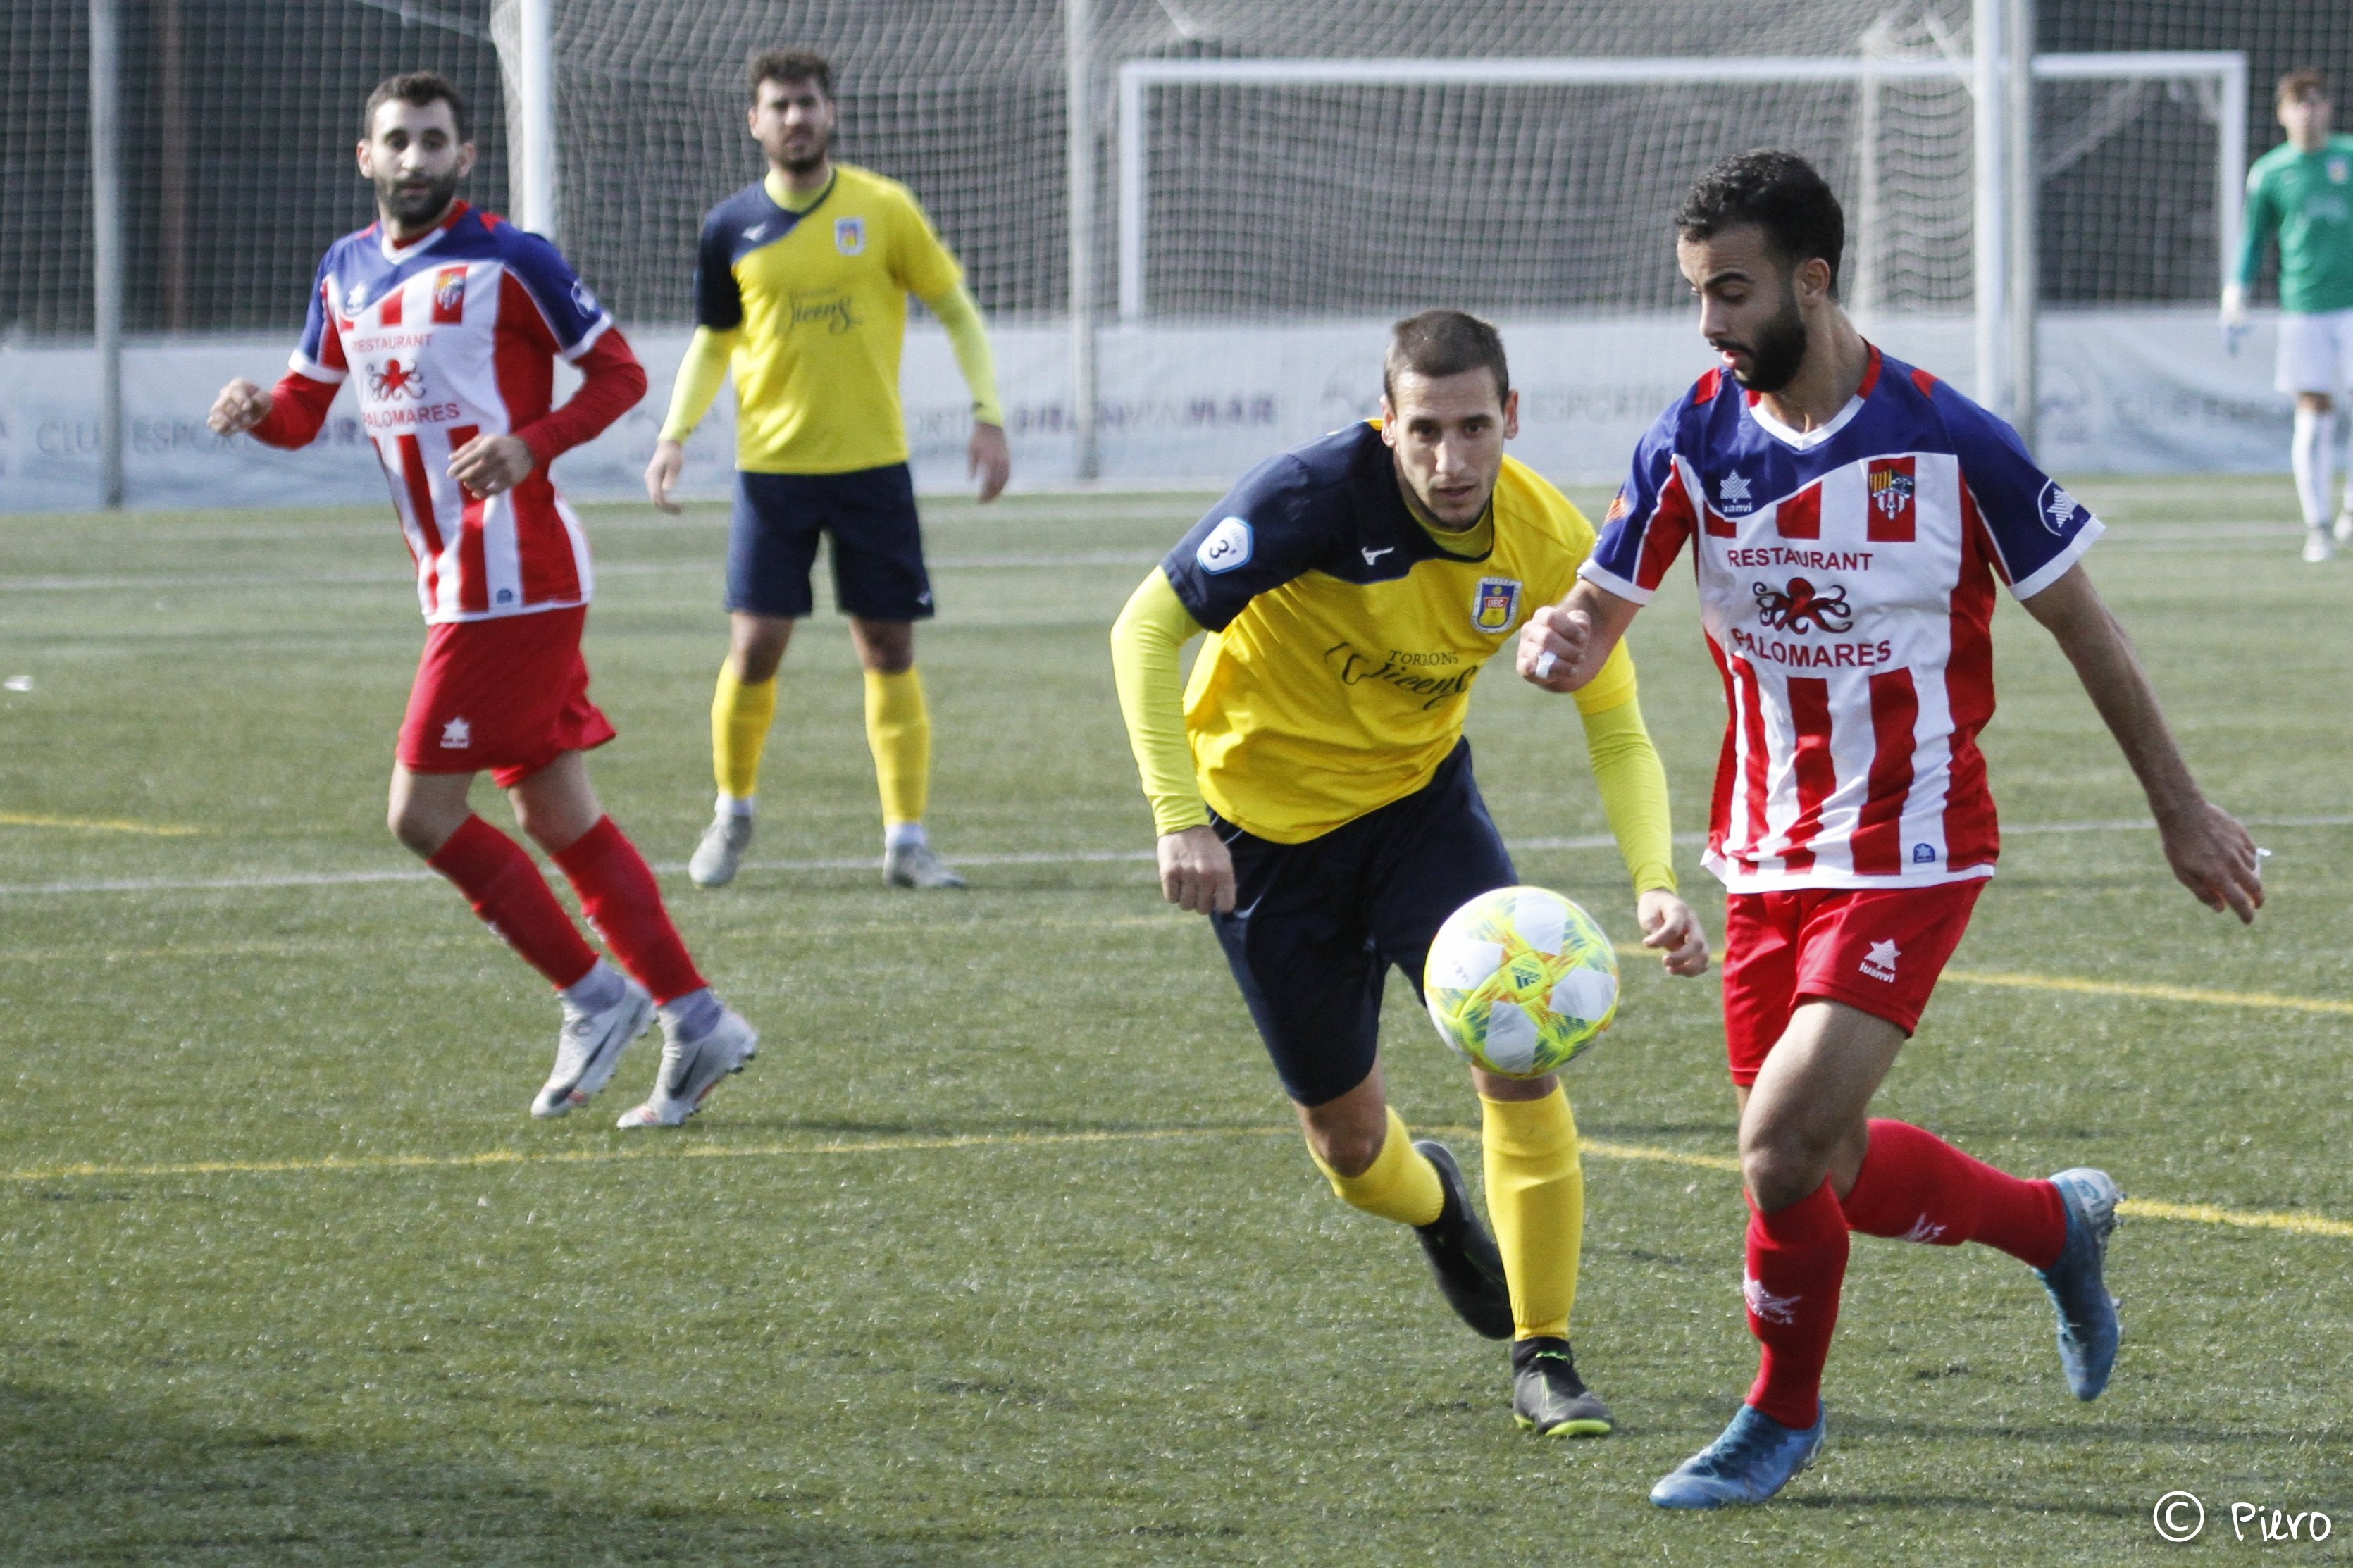 El jove futbolista del Vilassar Ali El Harrak fa el gol de la jornada des del cercle central